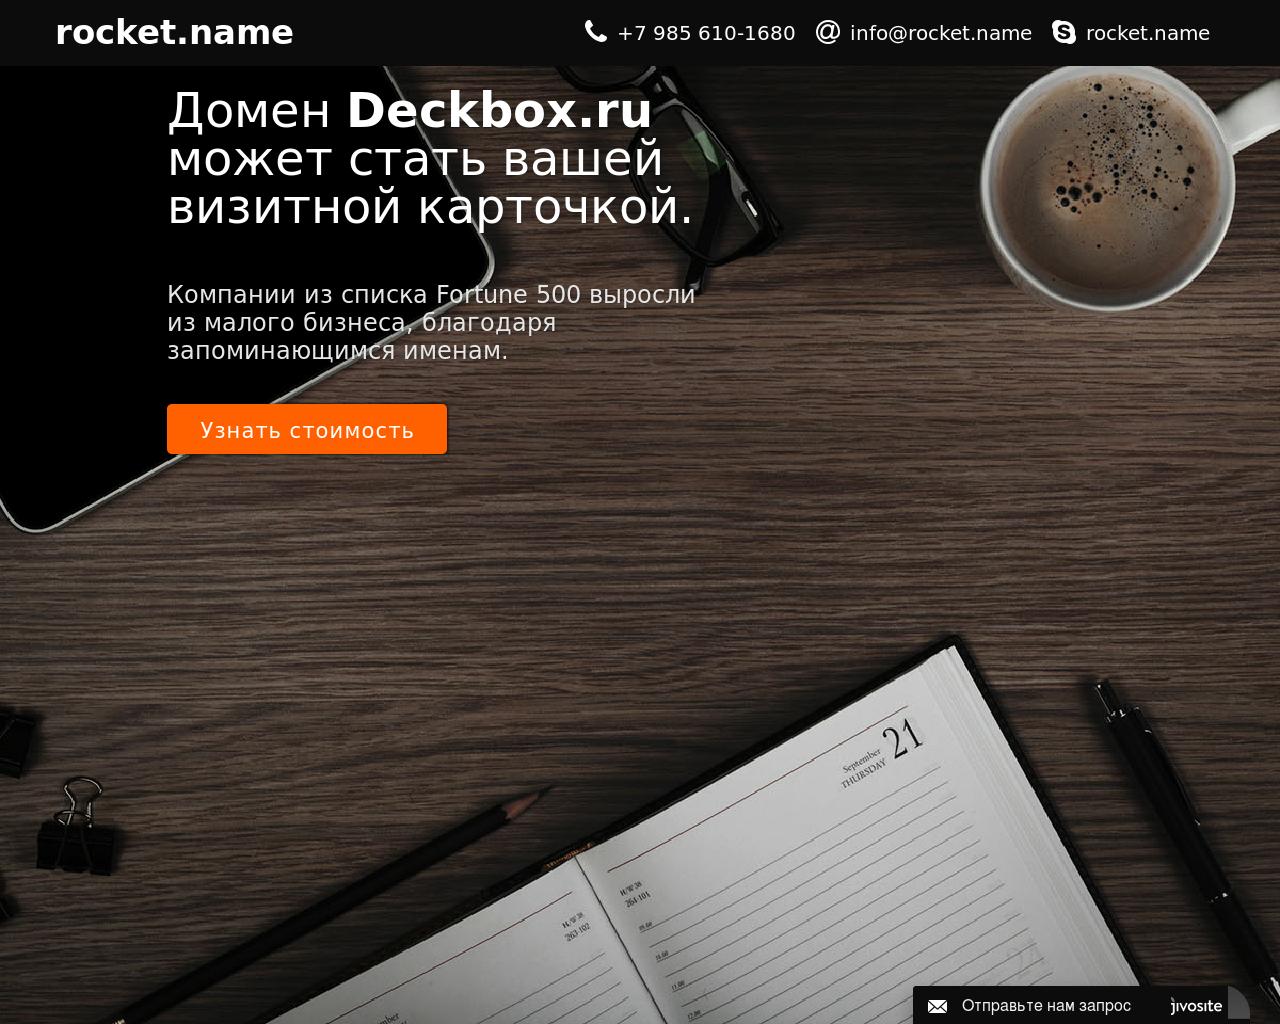 Изображение сайта deckbox.ru в разрешении 1280x1024